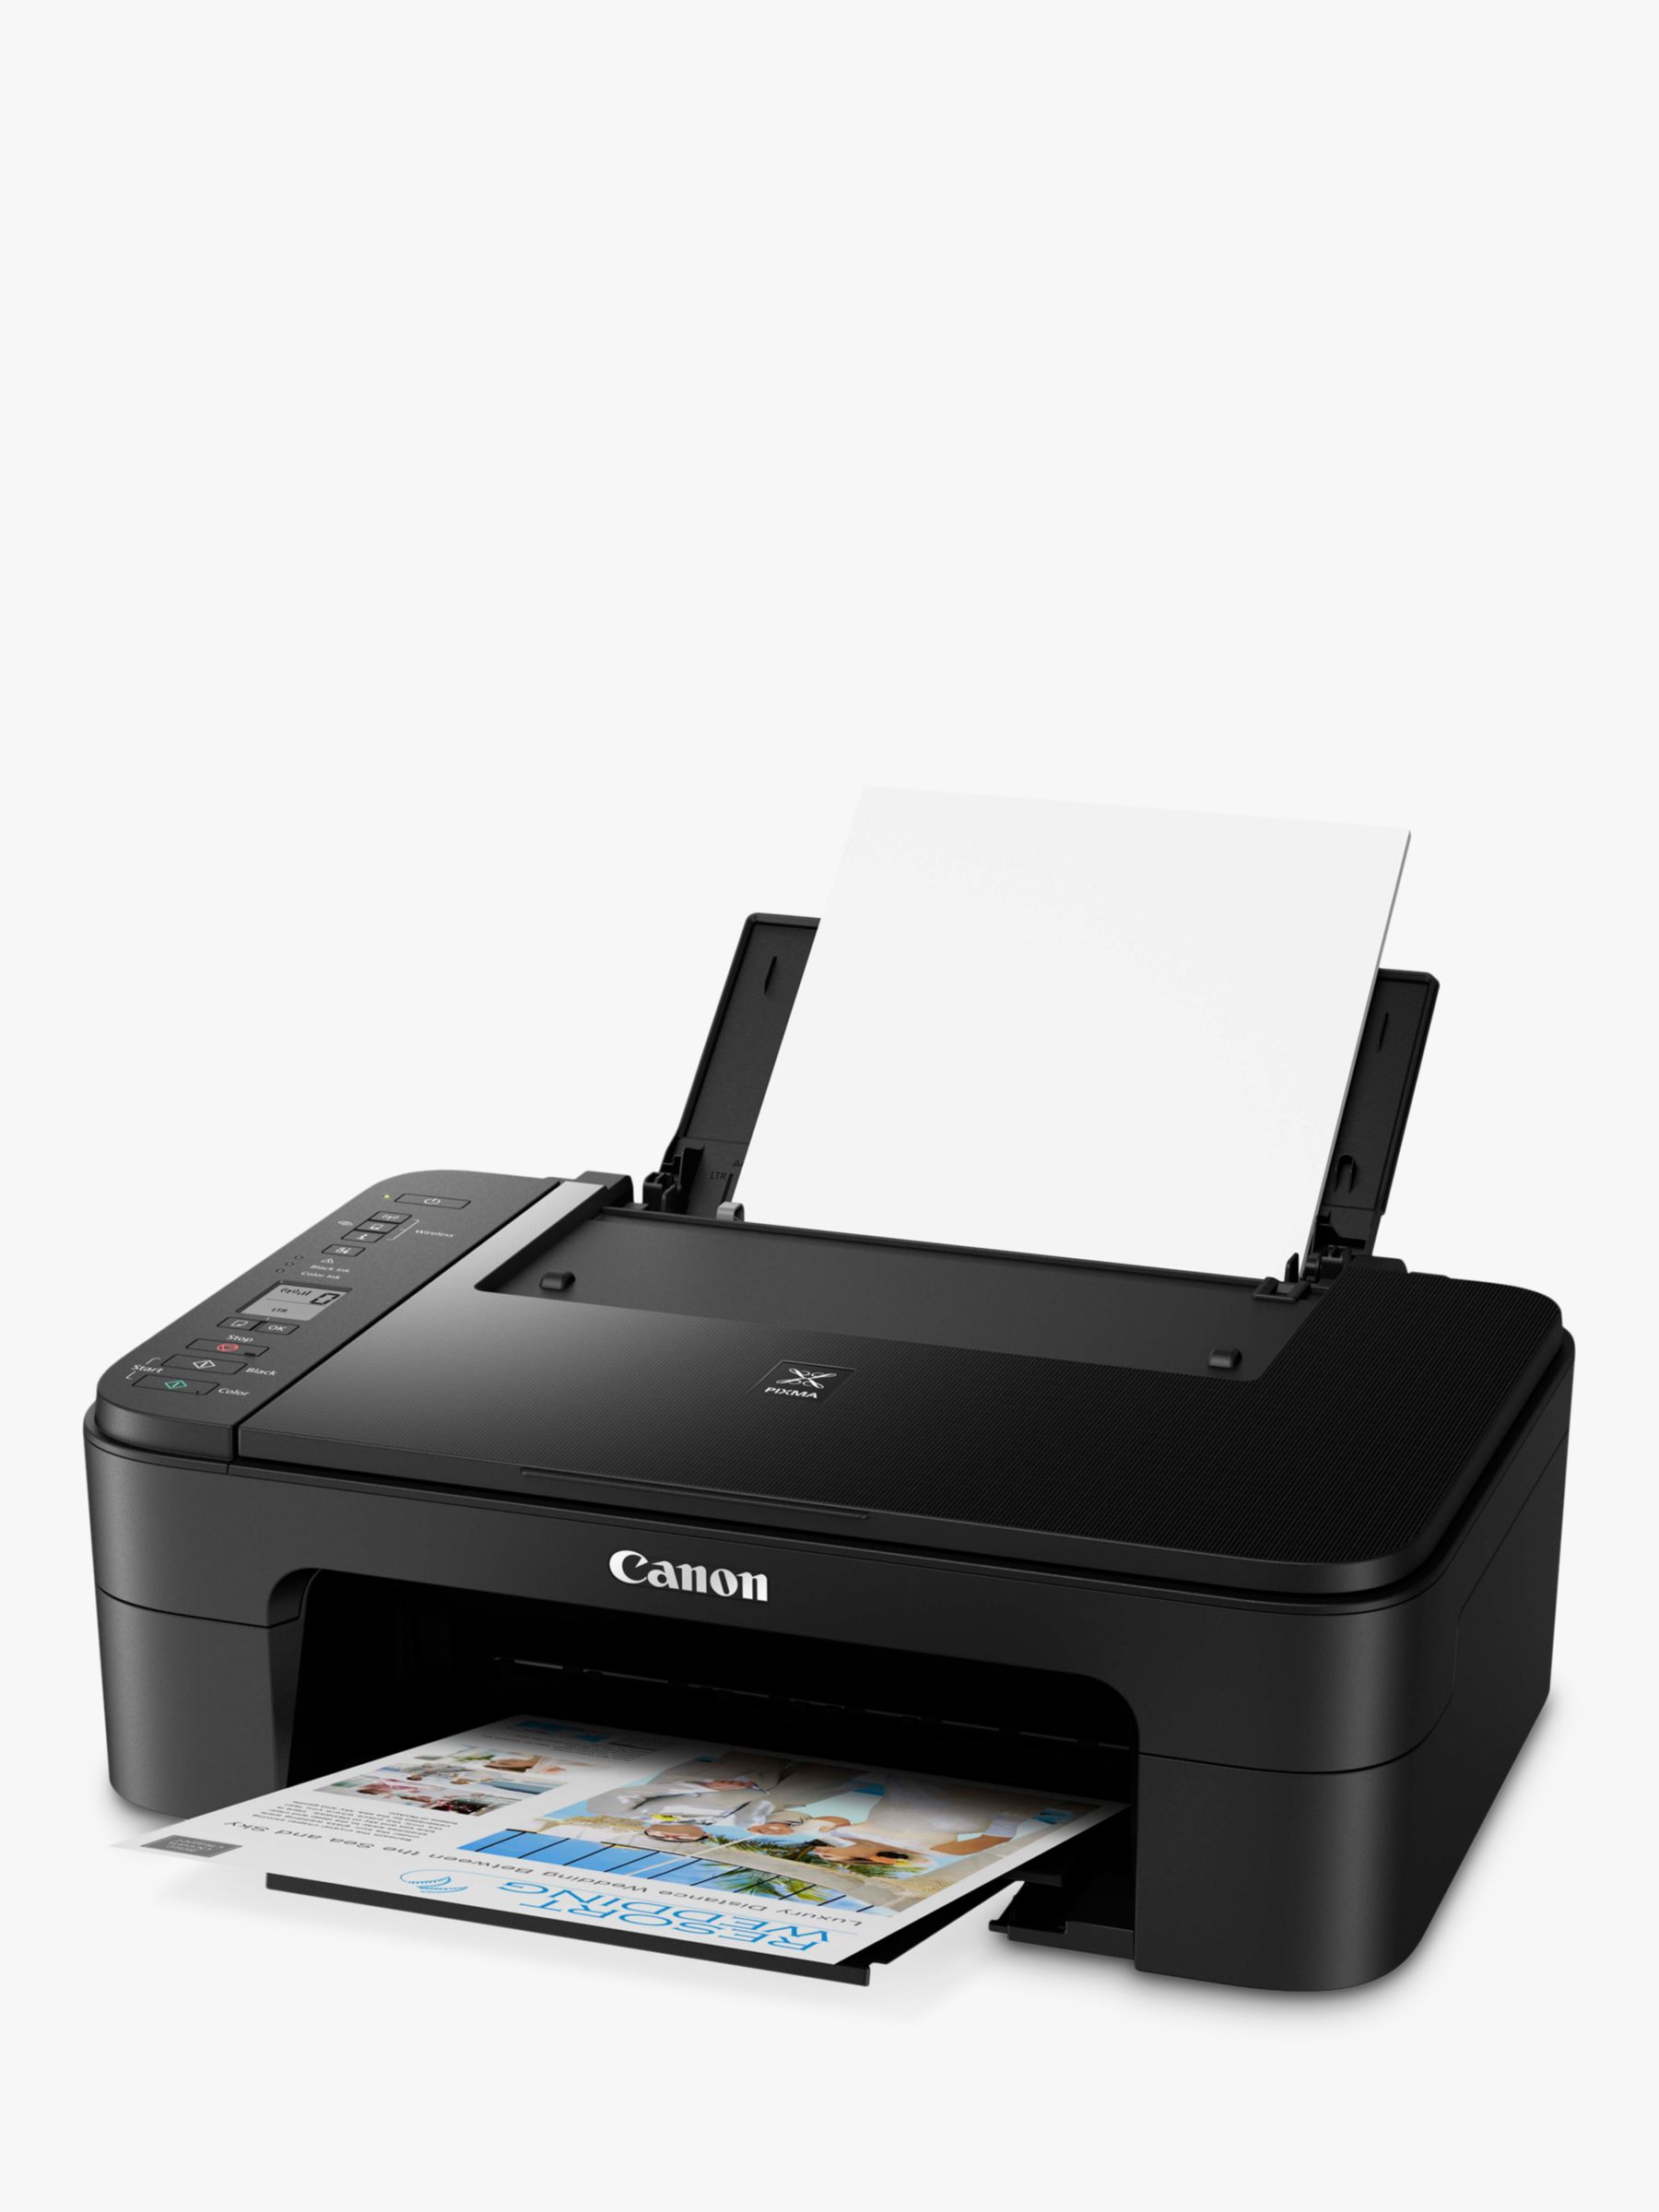 Canon PIXMA TS3350 All-in-One Wireless Wi-Fi Printer, Black